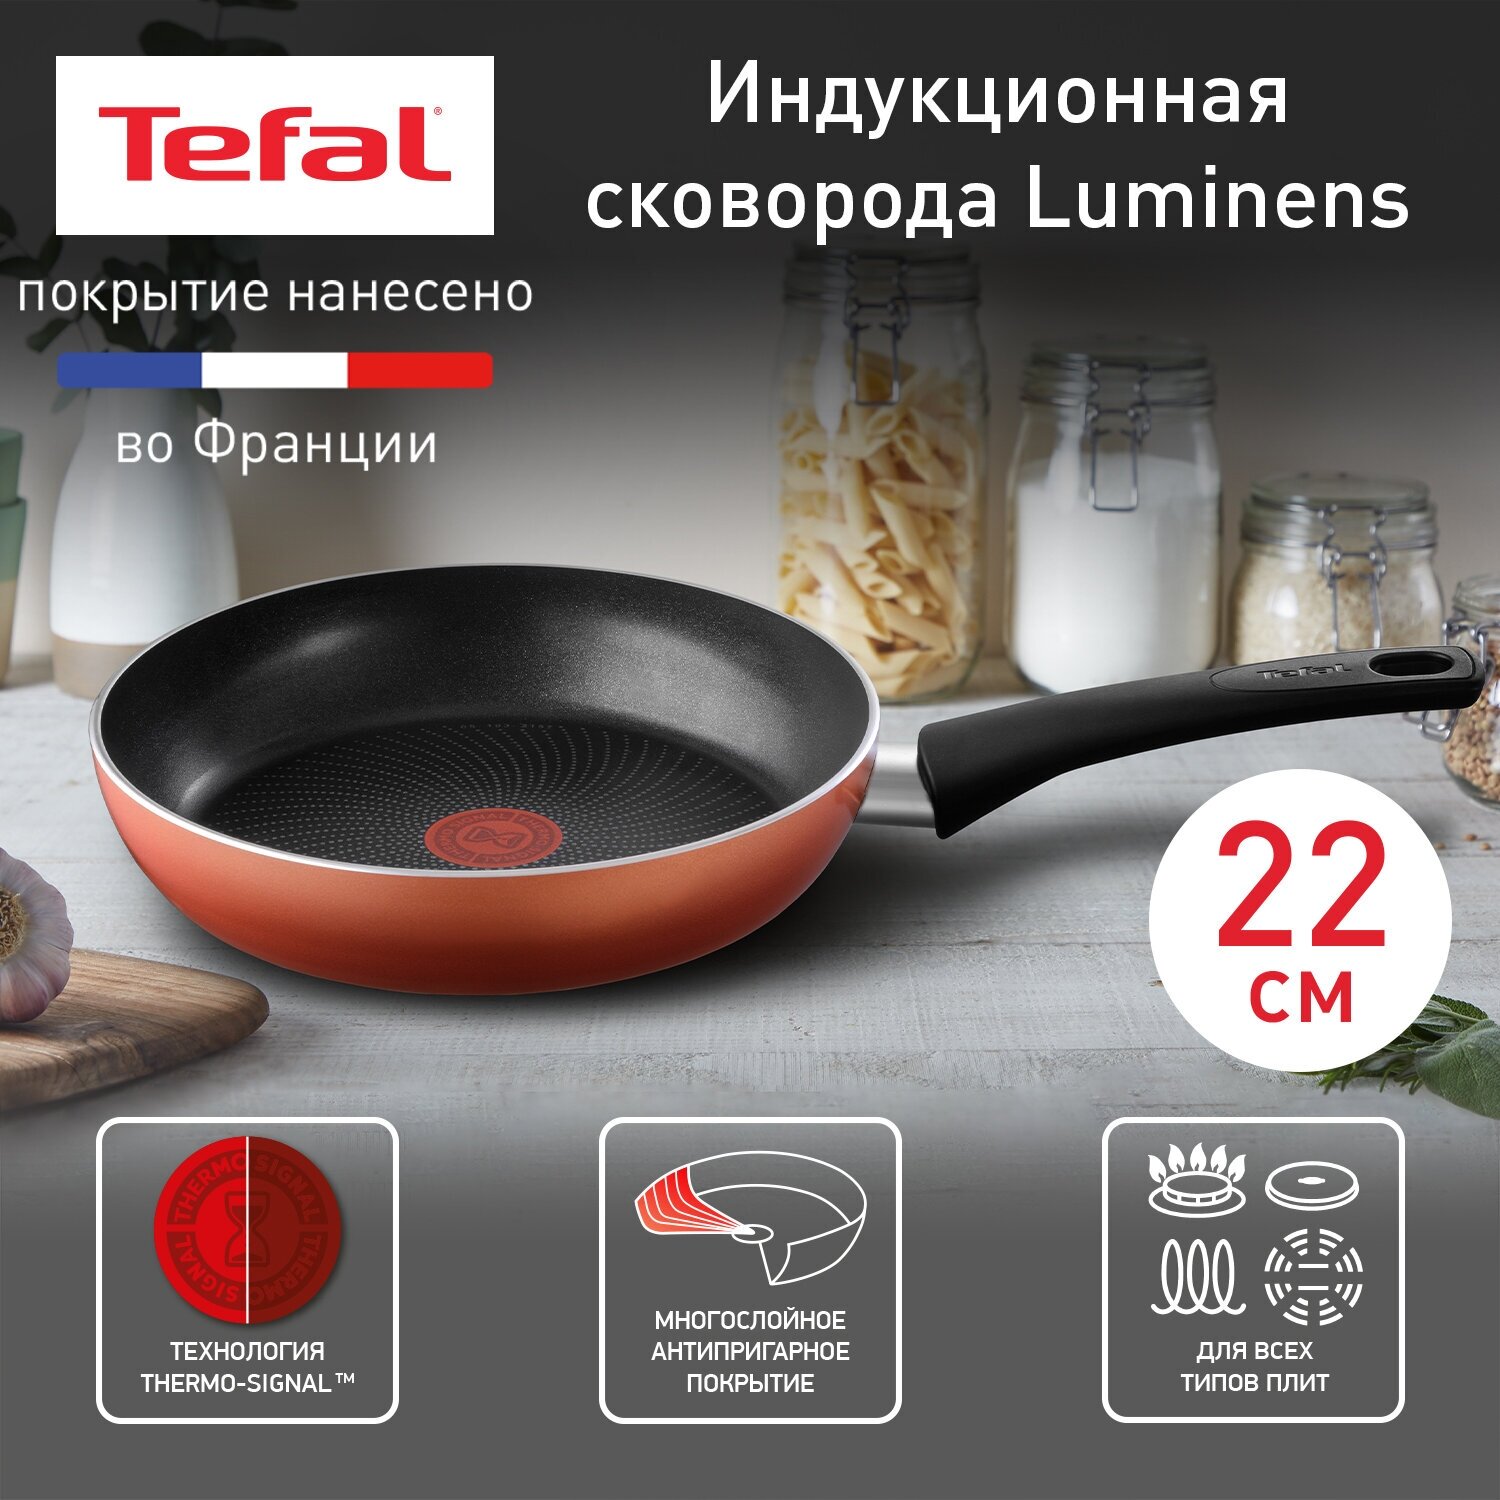 Сковорода Tefal Luminens 04224122, диаметр 22 см, с индикатором температуры, глубокая, с антипригарным покрытием, для газовых, электрических и индукционных плит